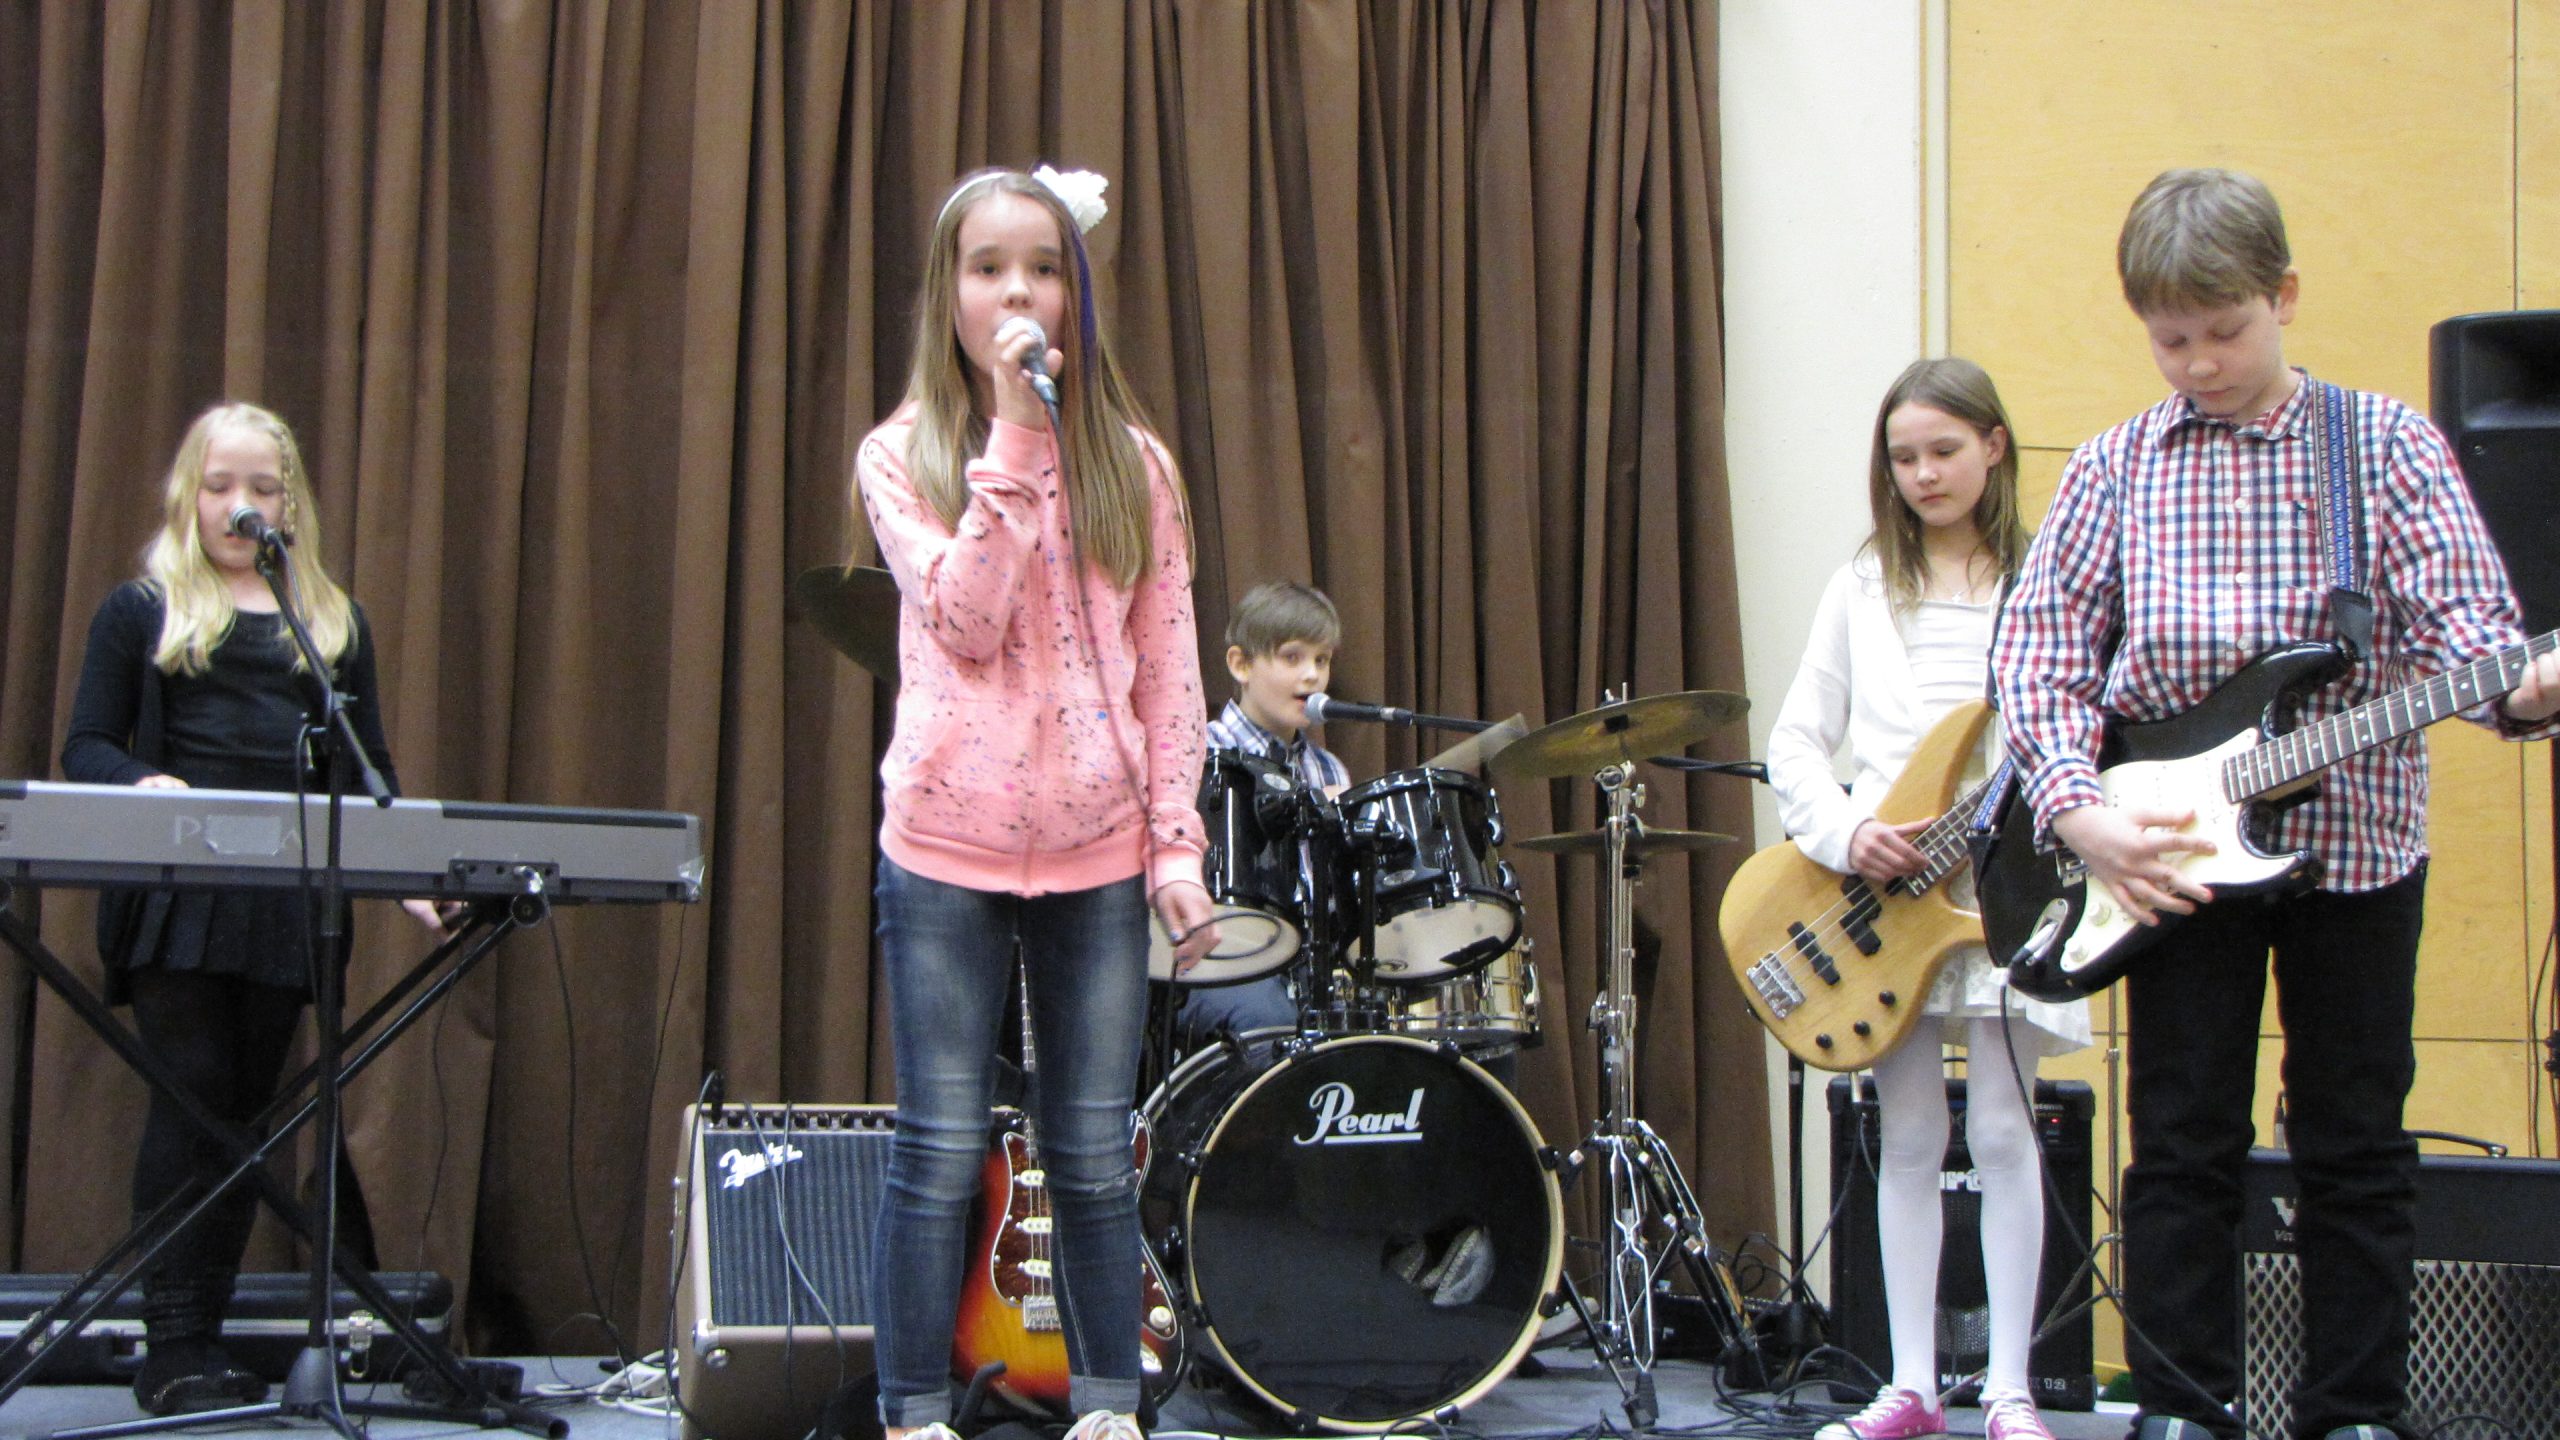 Alakouluikäiset kaksi poikaa ja kolme tyttöä esittävät bändinä kappaletta, yksi tytöistä laulaa.